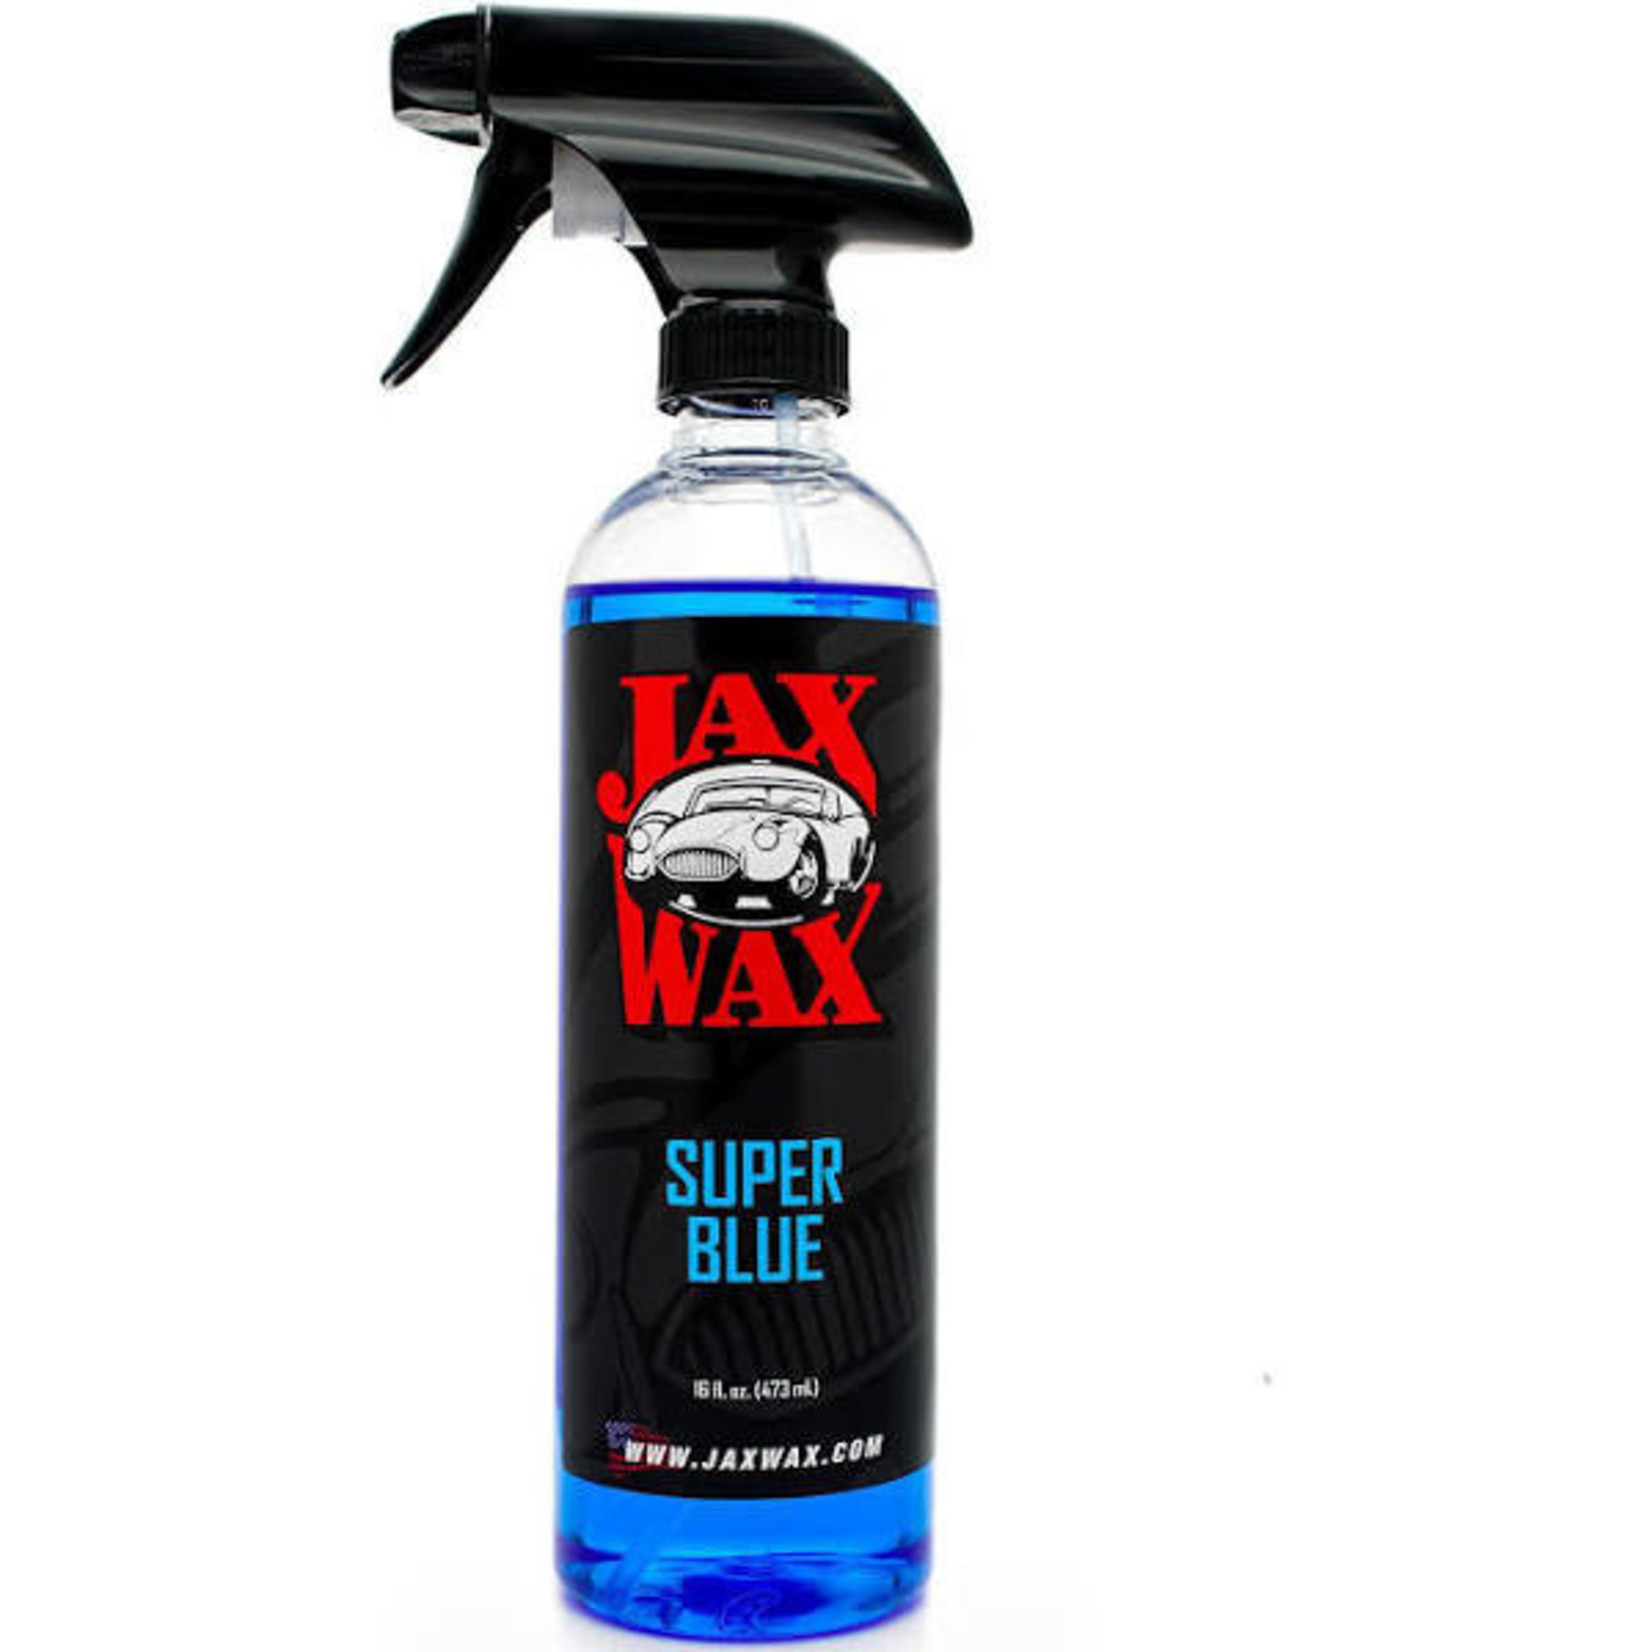 Jax Wax Super Blue 16oz